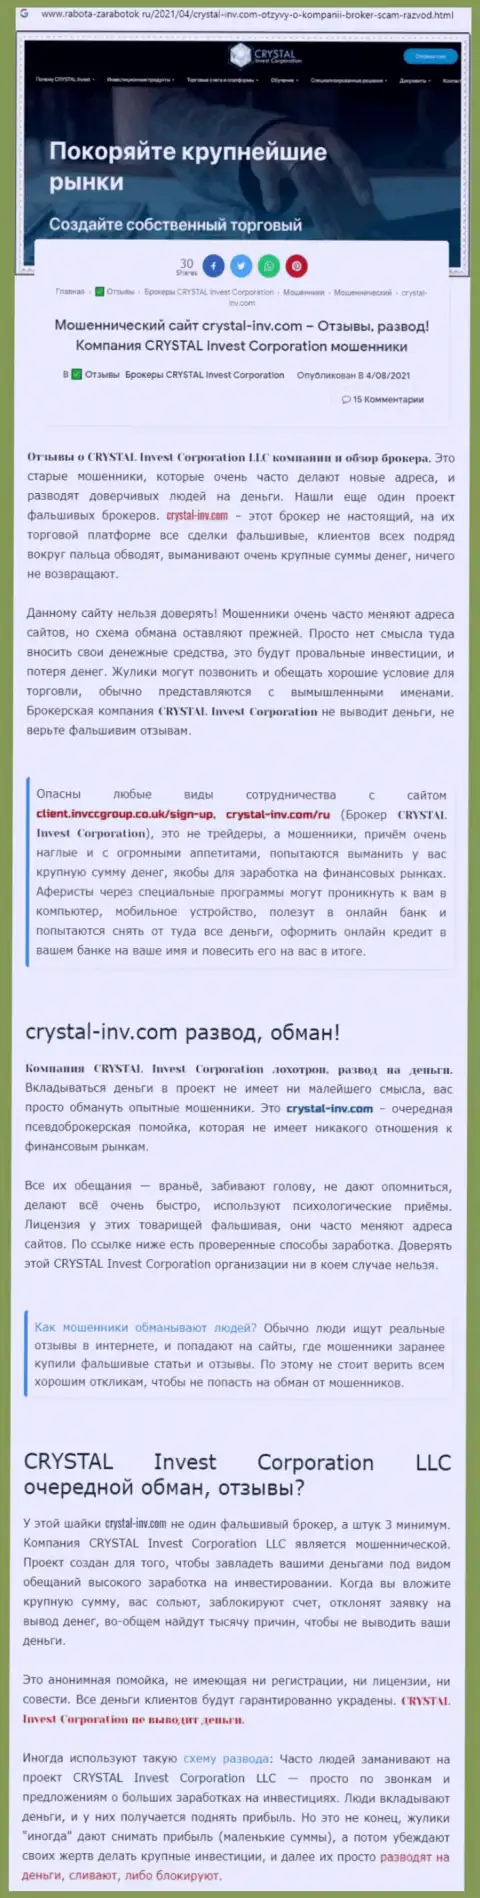 Материал, выводящий на чистую воду организацию Crystal Inv, позаимствованный с онлайн-сервиса с обзорами различных контор